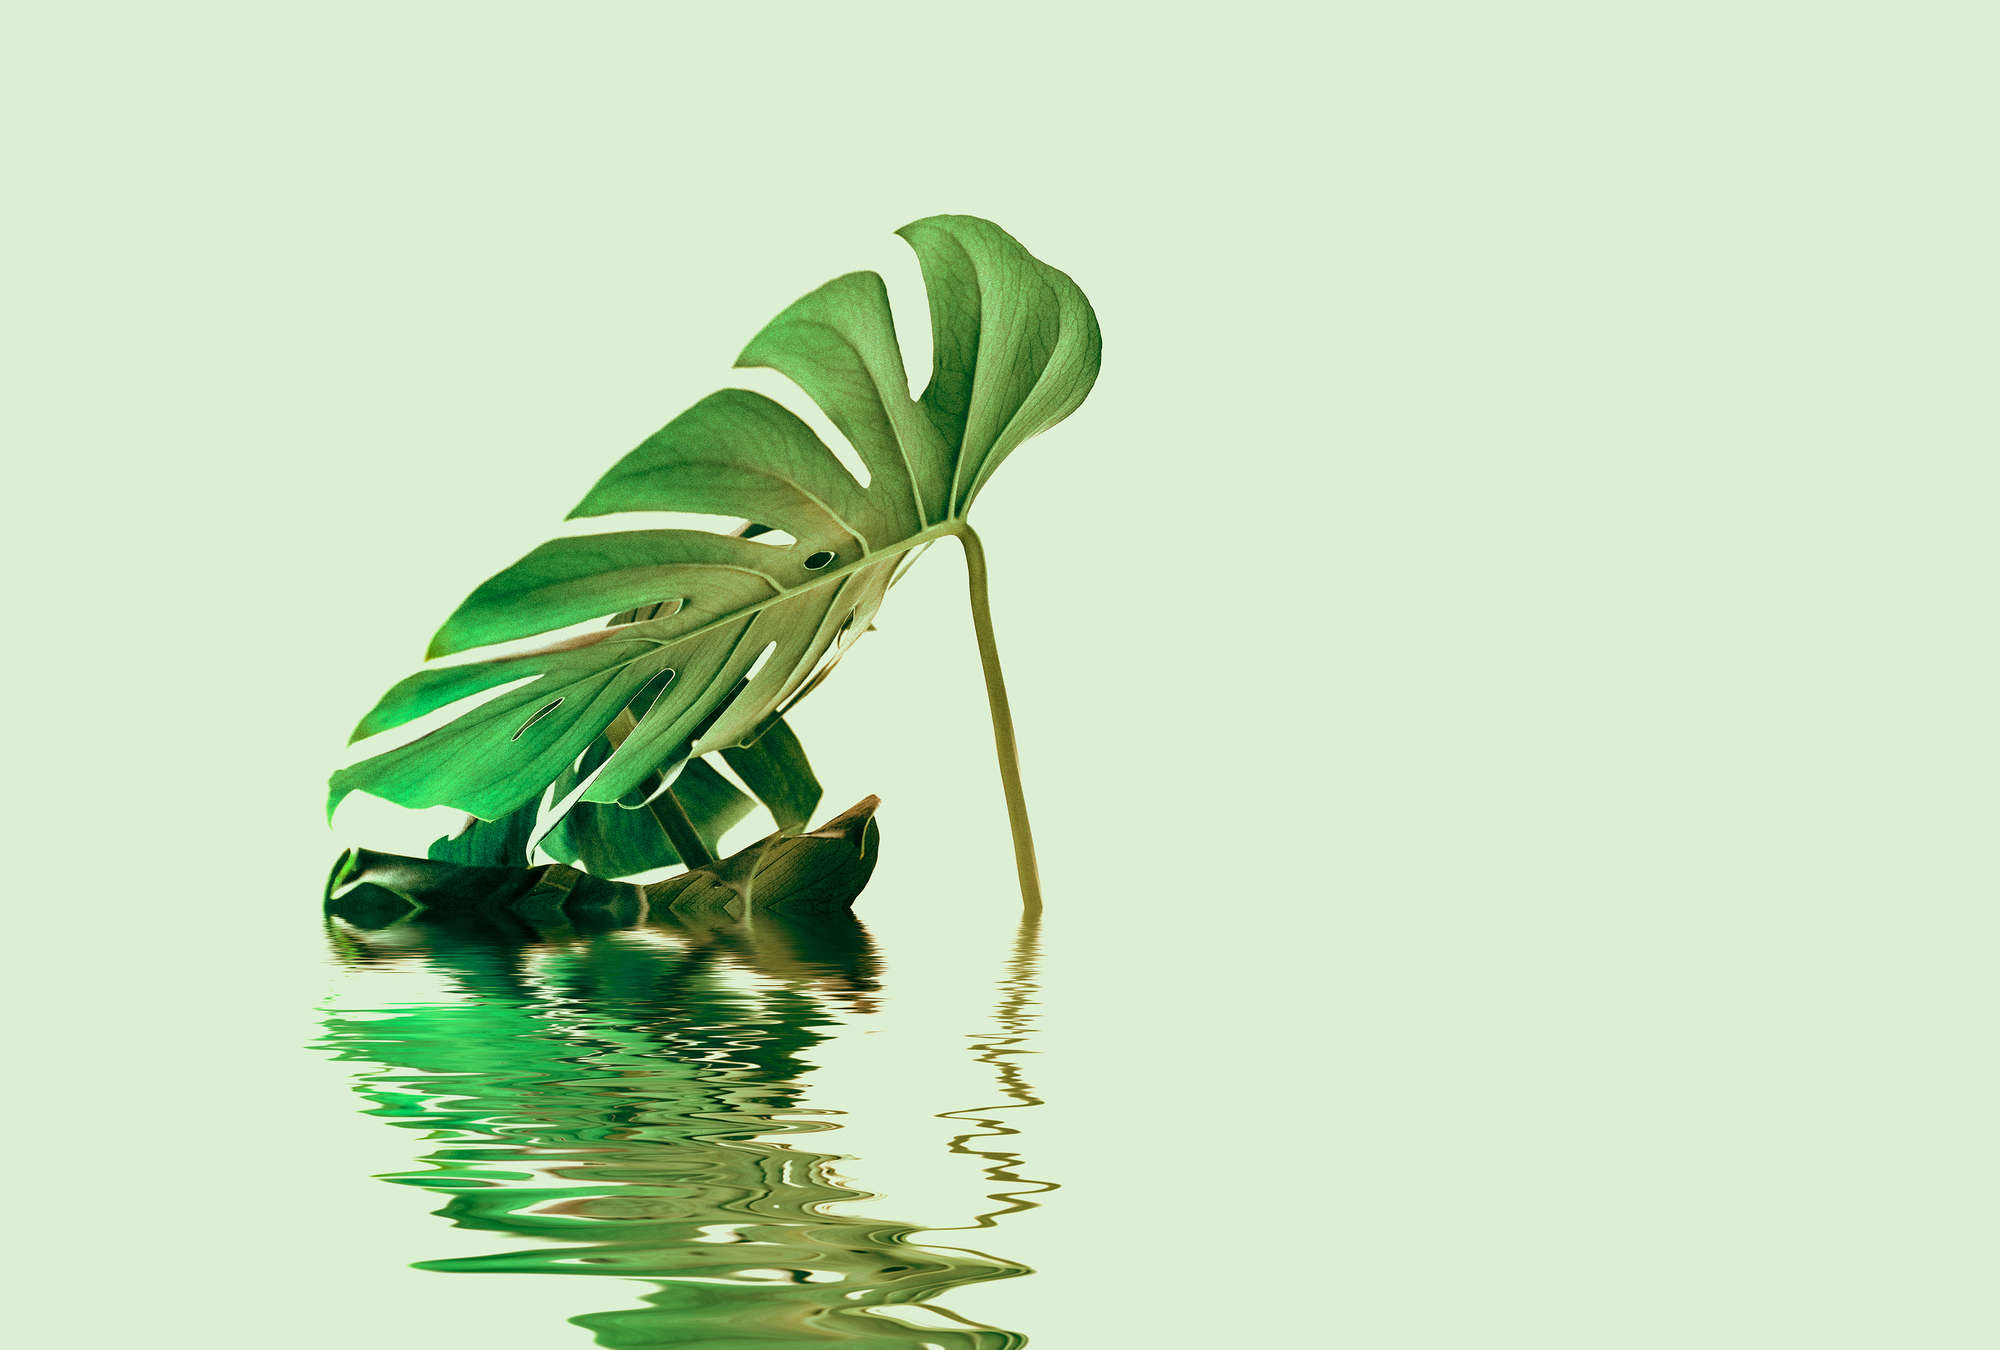             Muurschildering Monstera blad in water voor wellness design
        